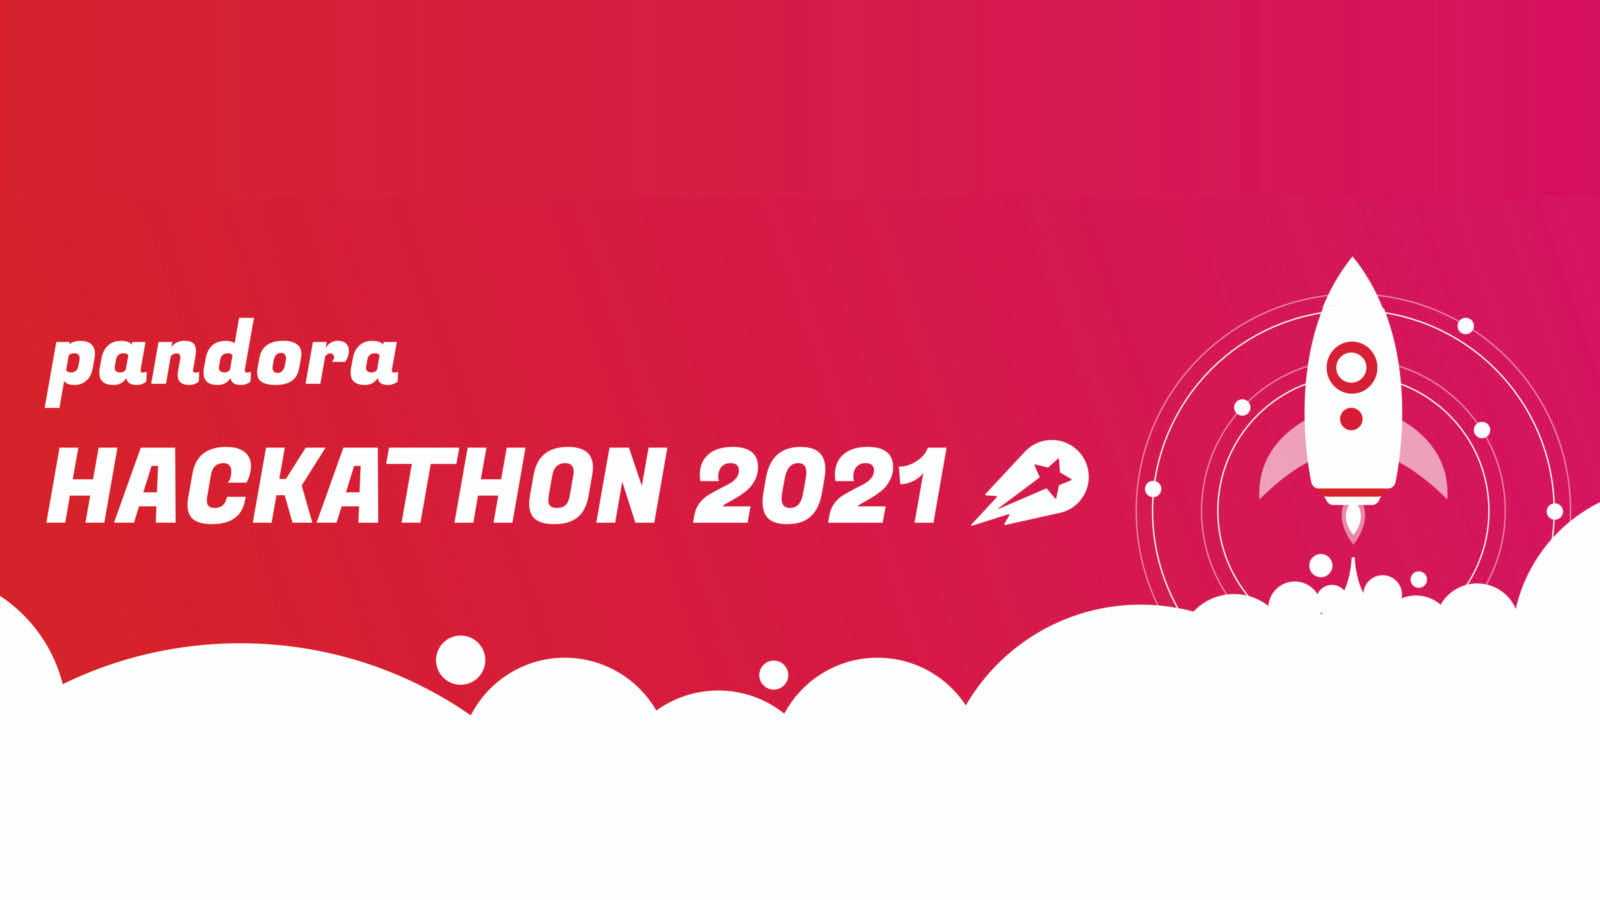 Pandora Hackathon 2021: In review